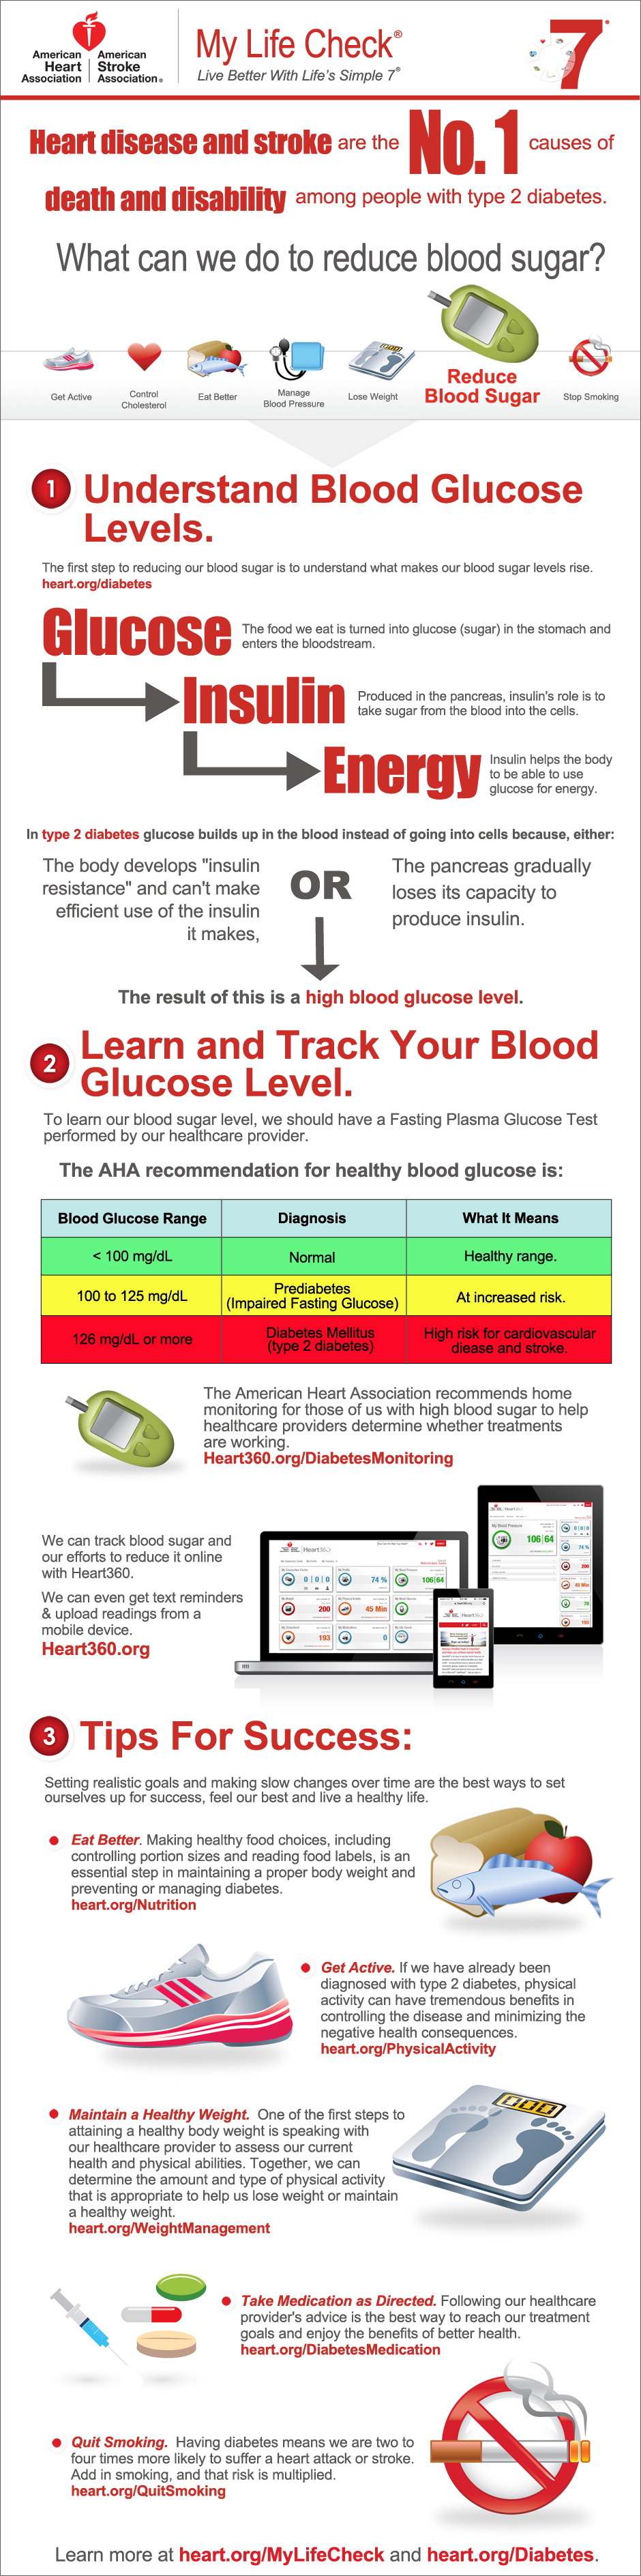 Ways to Lower Blood Sugar